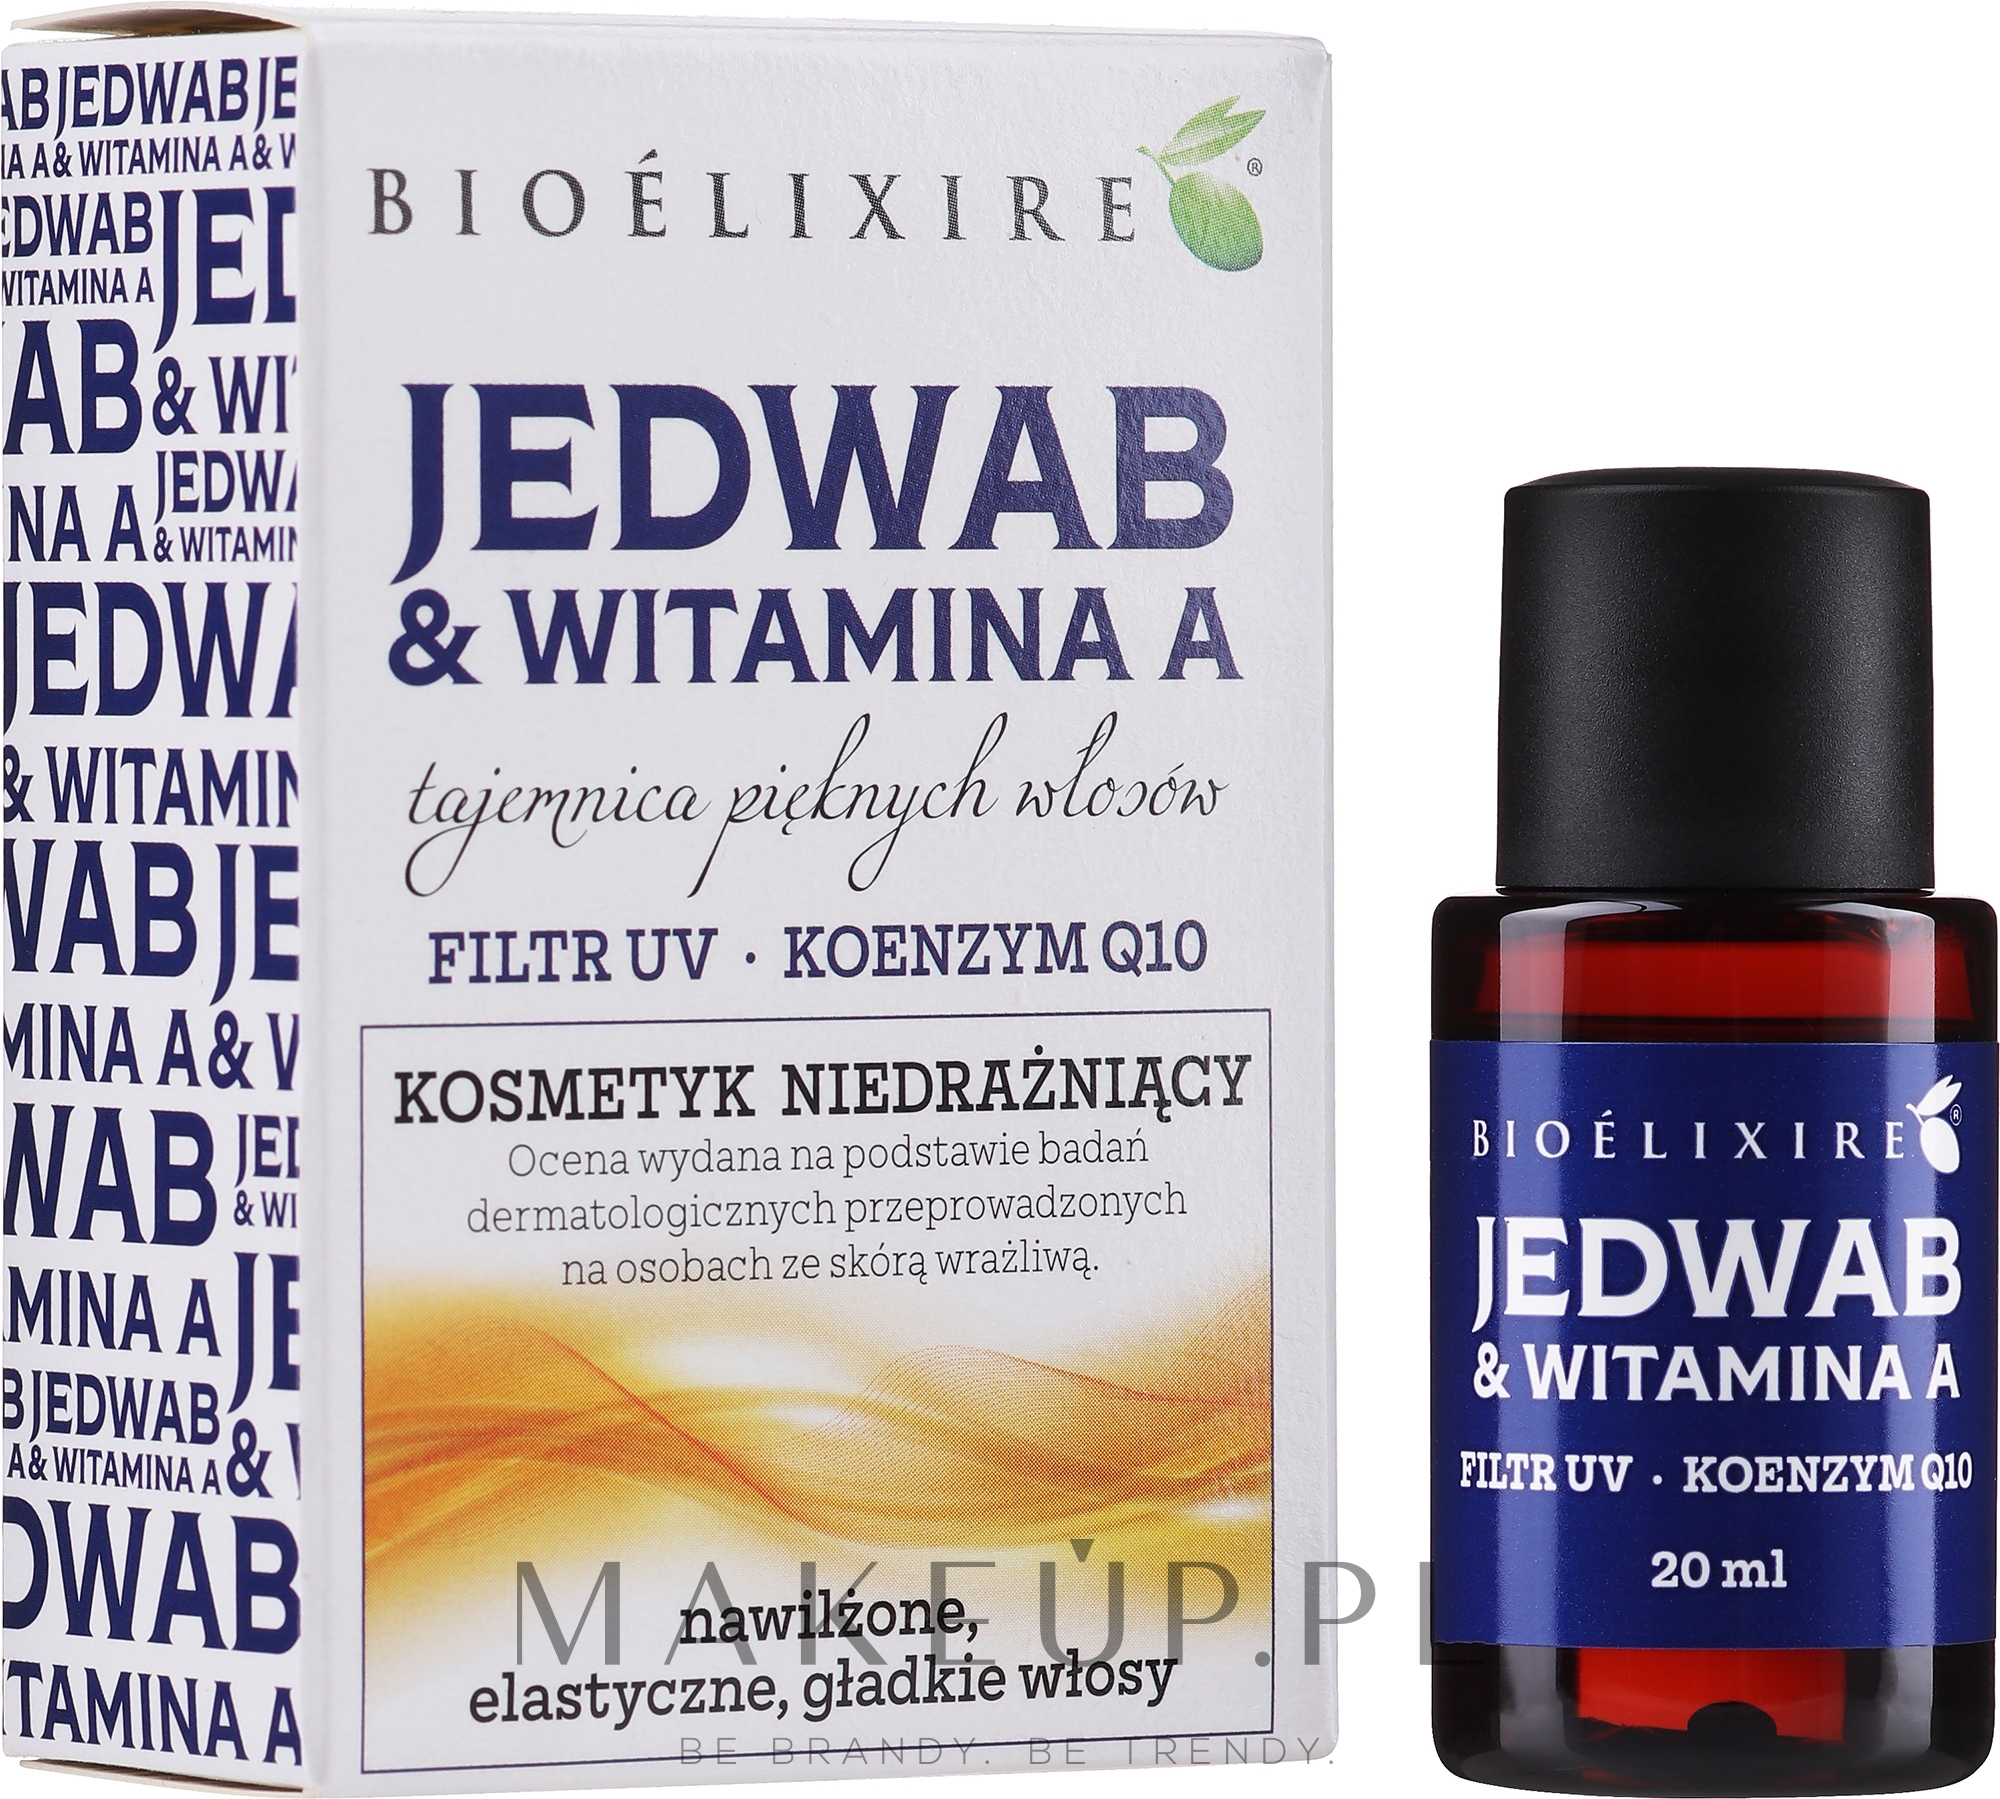 Wzmacniający olejek do włosów z jedwabiem i witaminą A - Bioelixire Silk Serum+Vitamina A  — Zdjęcie 20 ml